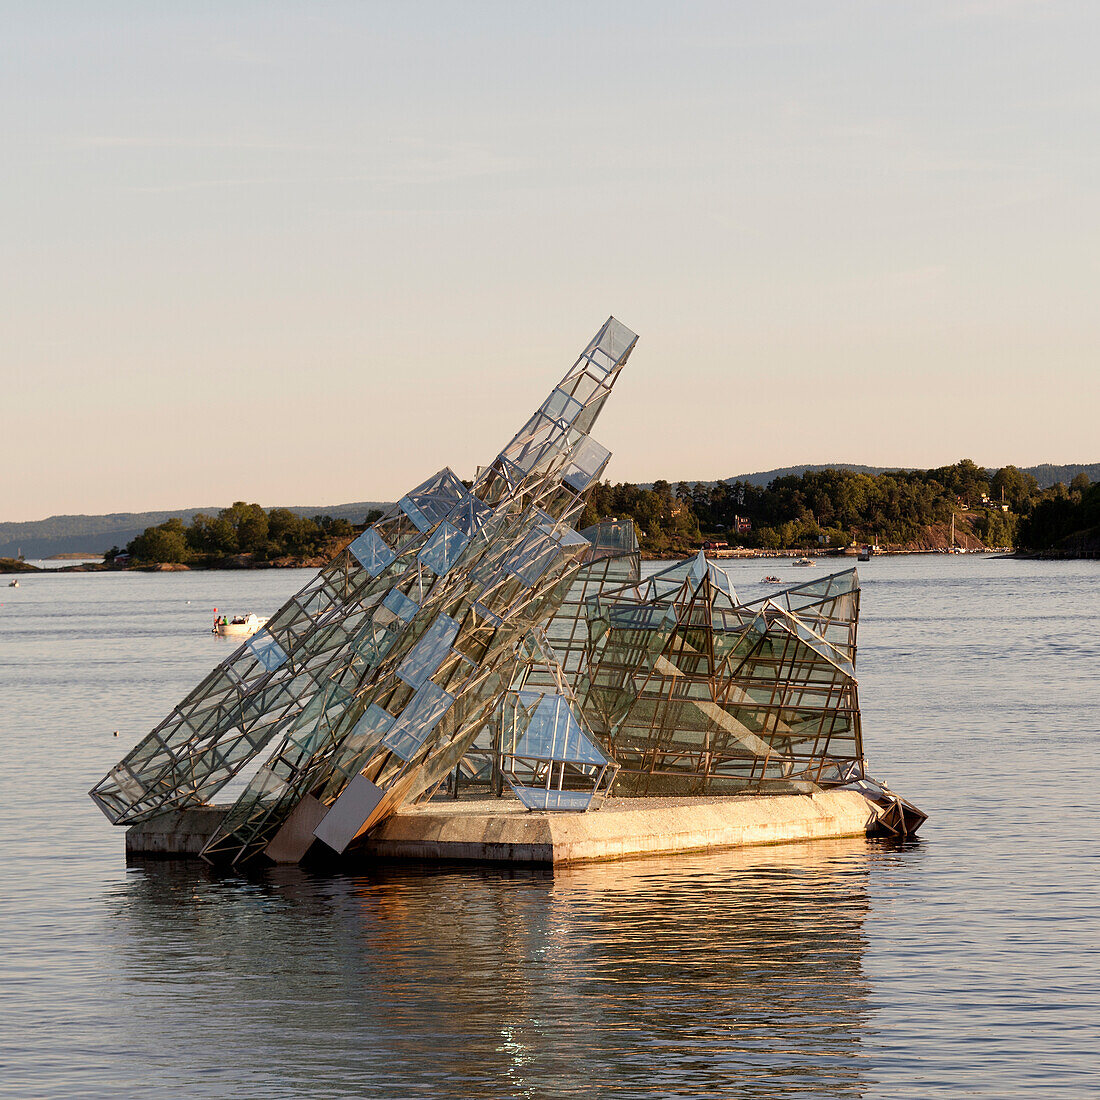 Eine schwimmende Glasskulptur im Wasser vor dem Osloer Opernhaus; Oslo, Norwegen